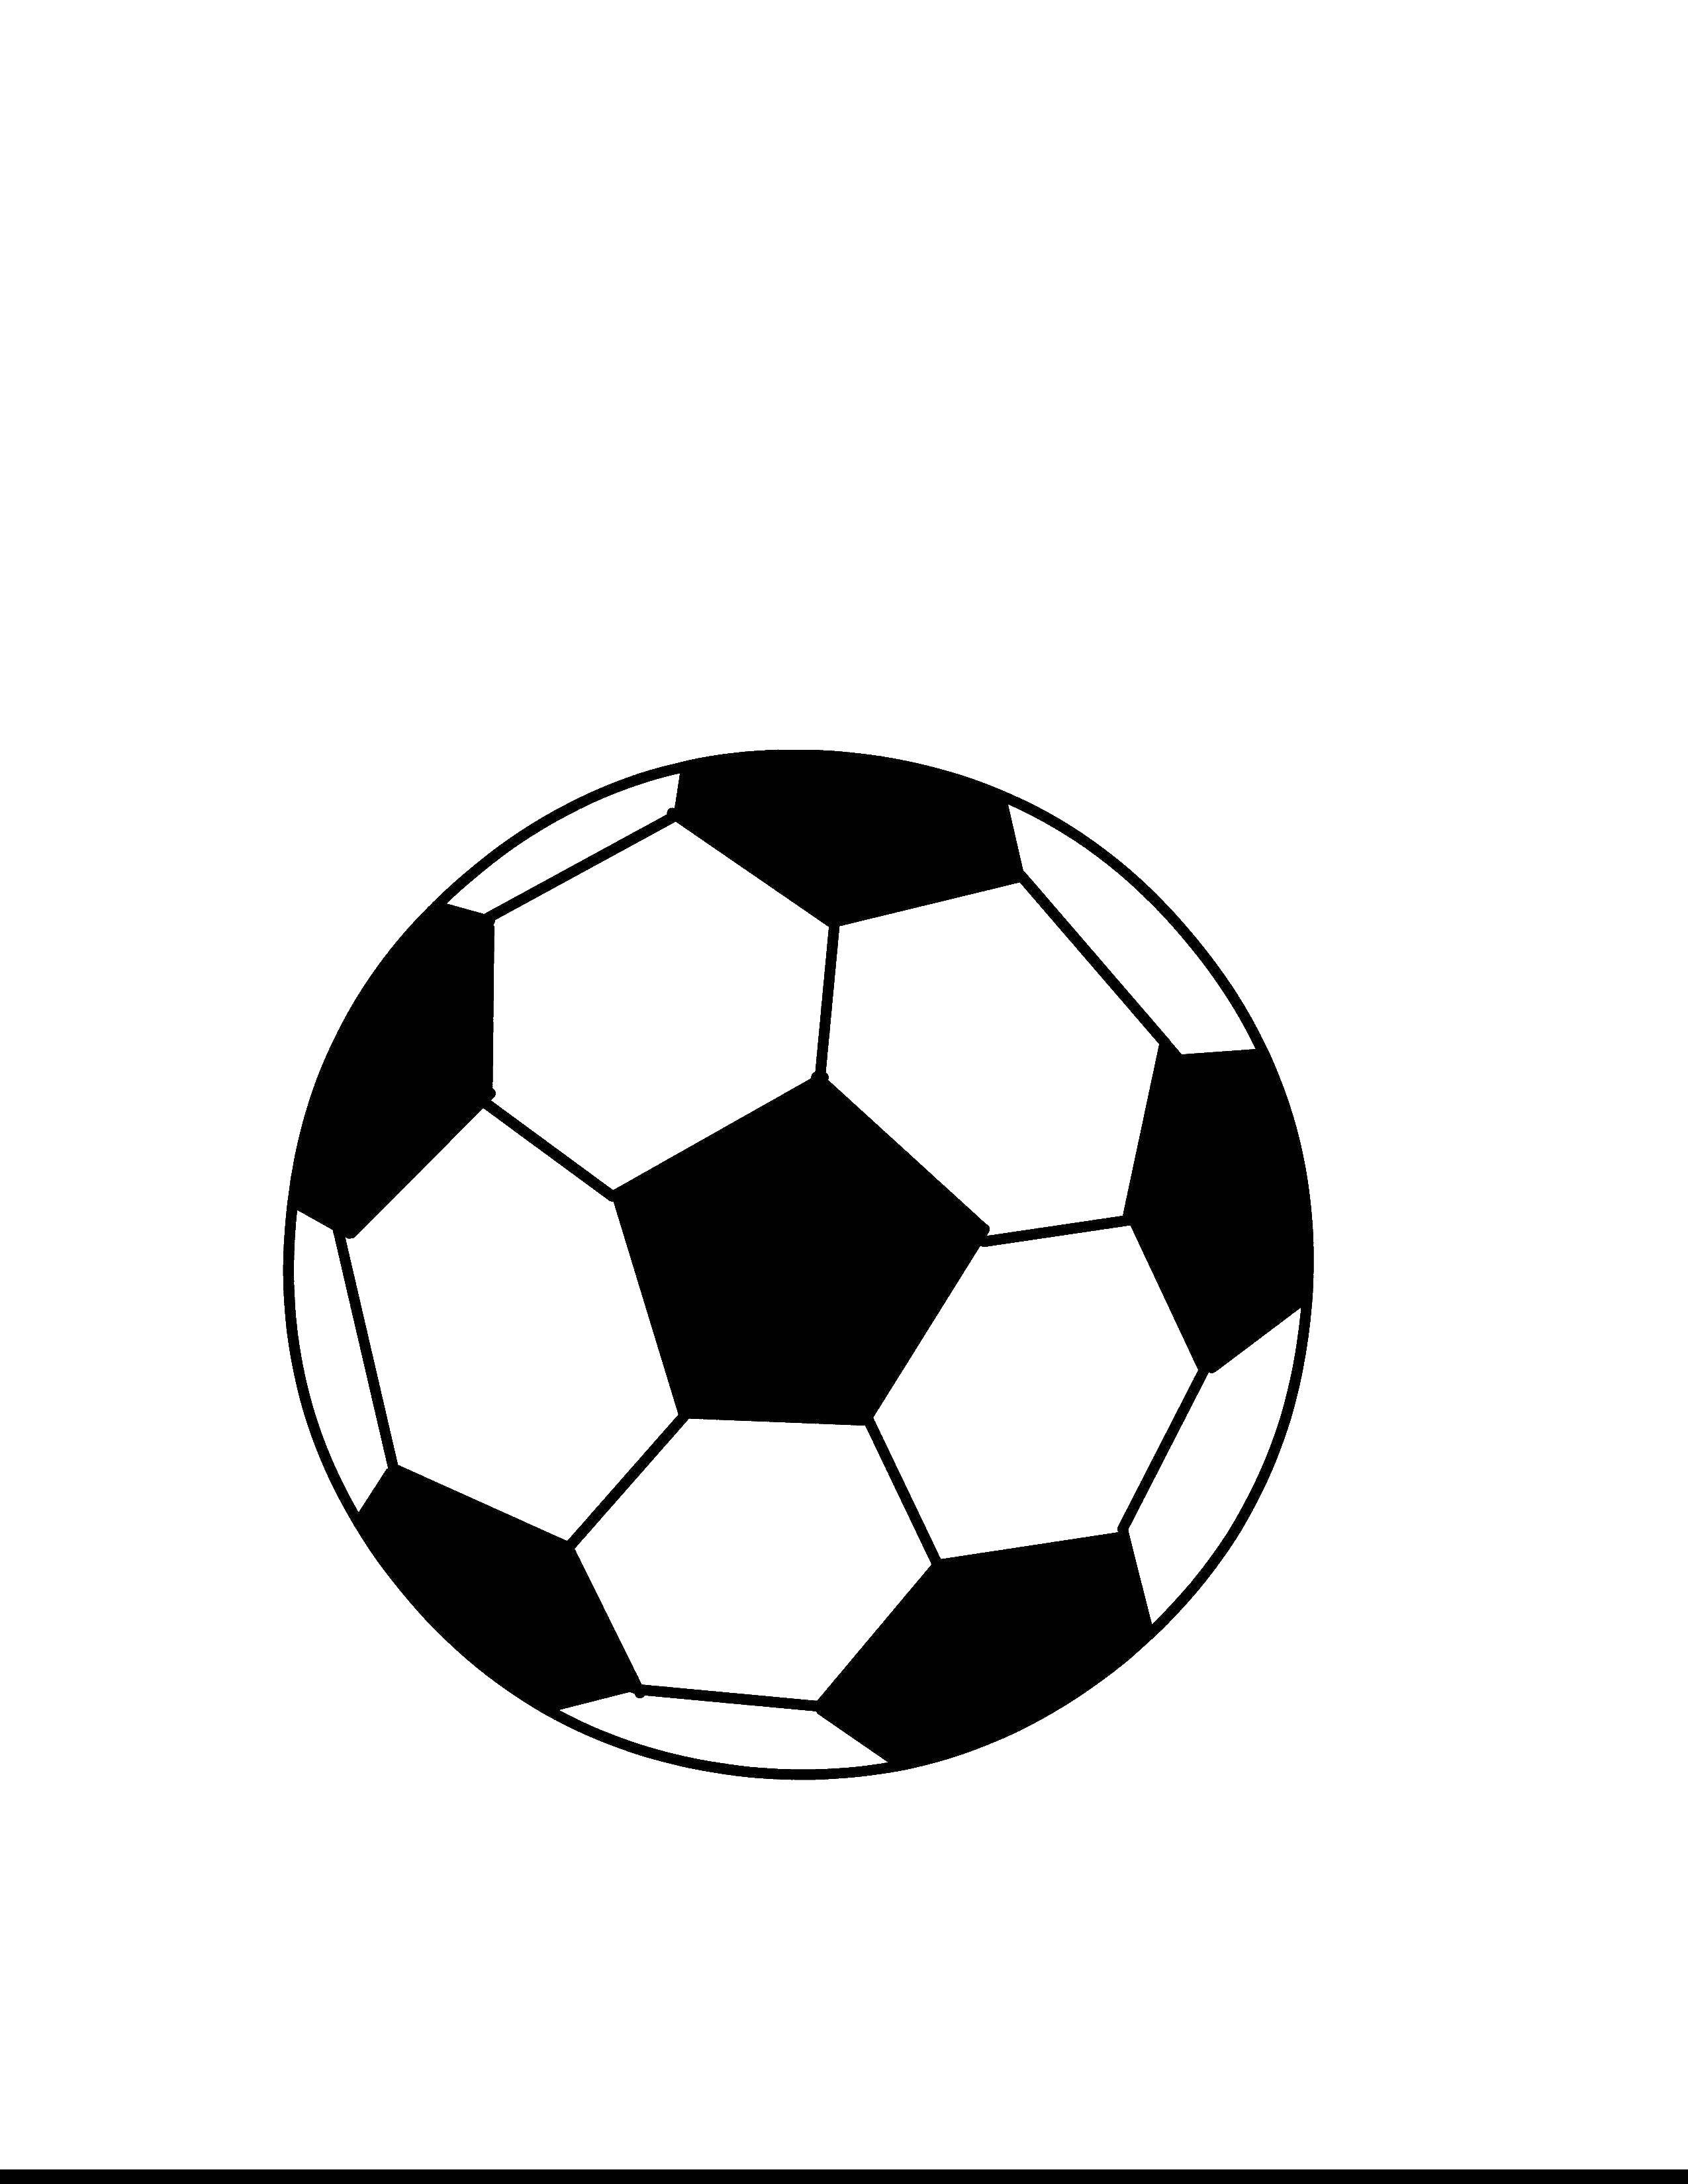 Название: Раскраска Футбольный мяч. Категория: Спорт. Теги: спорт, футбол, футбольный мяч.